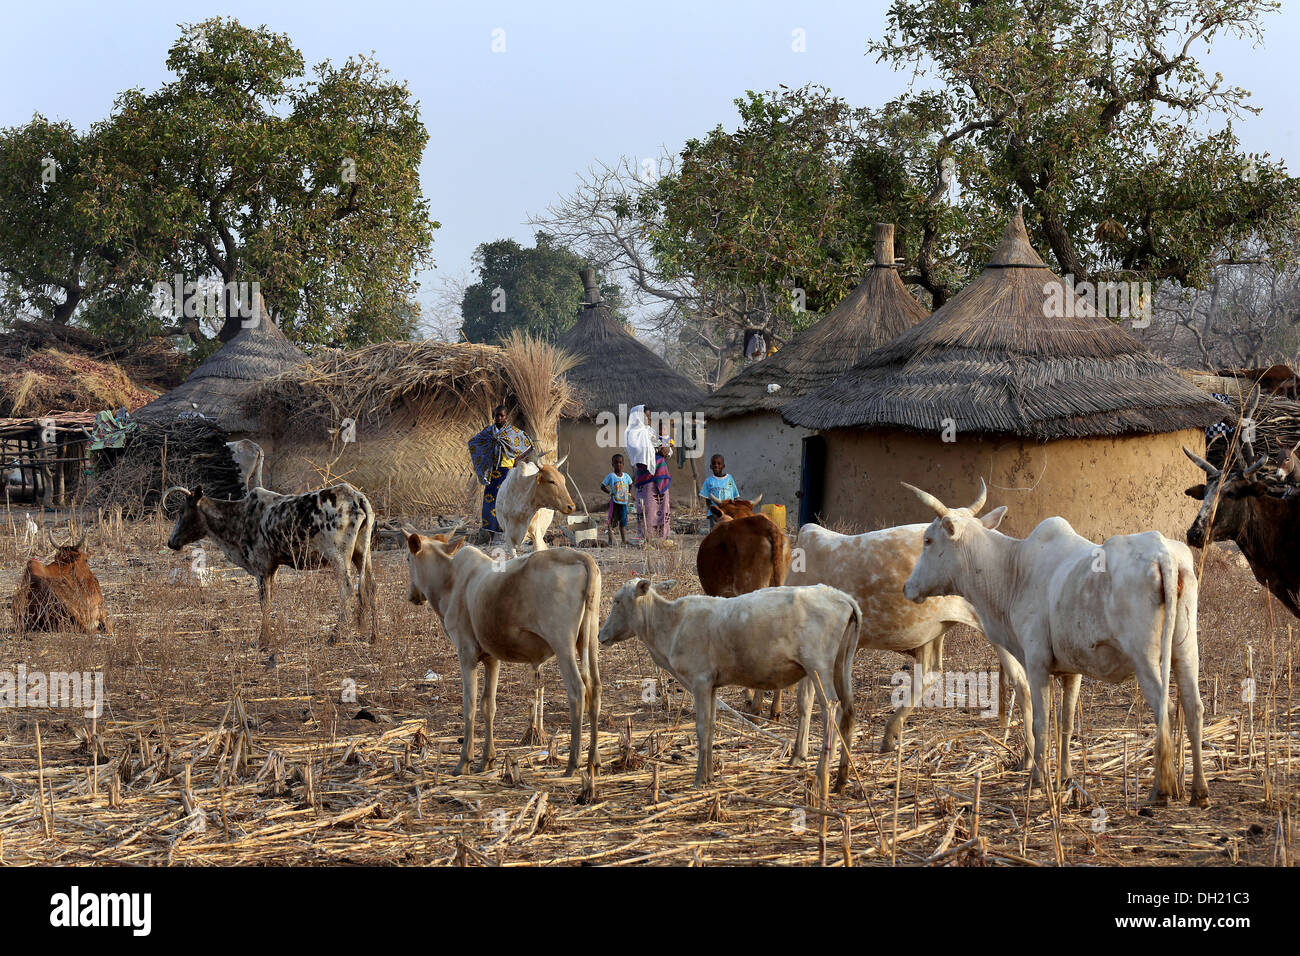 Les vaches autour d'un village traditionnel avec des huttes au toit de chaume, près de Koudougou, Burkina Faso Banque D'Images